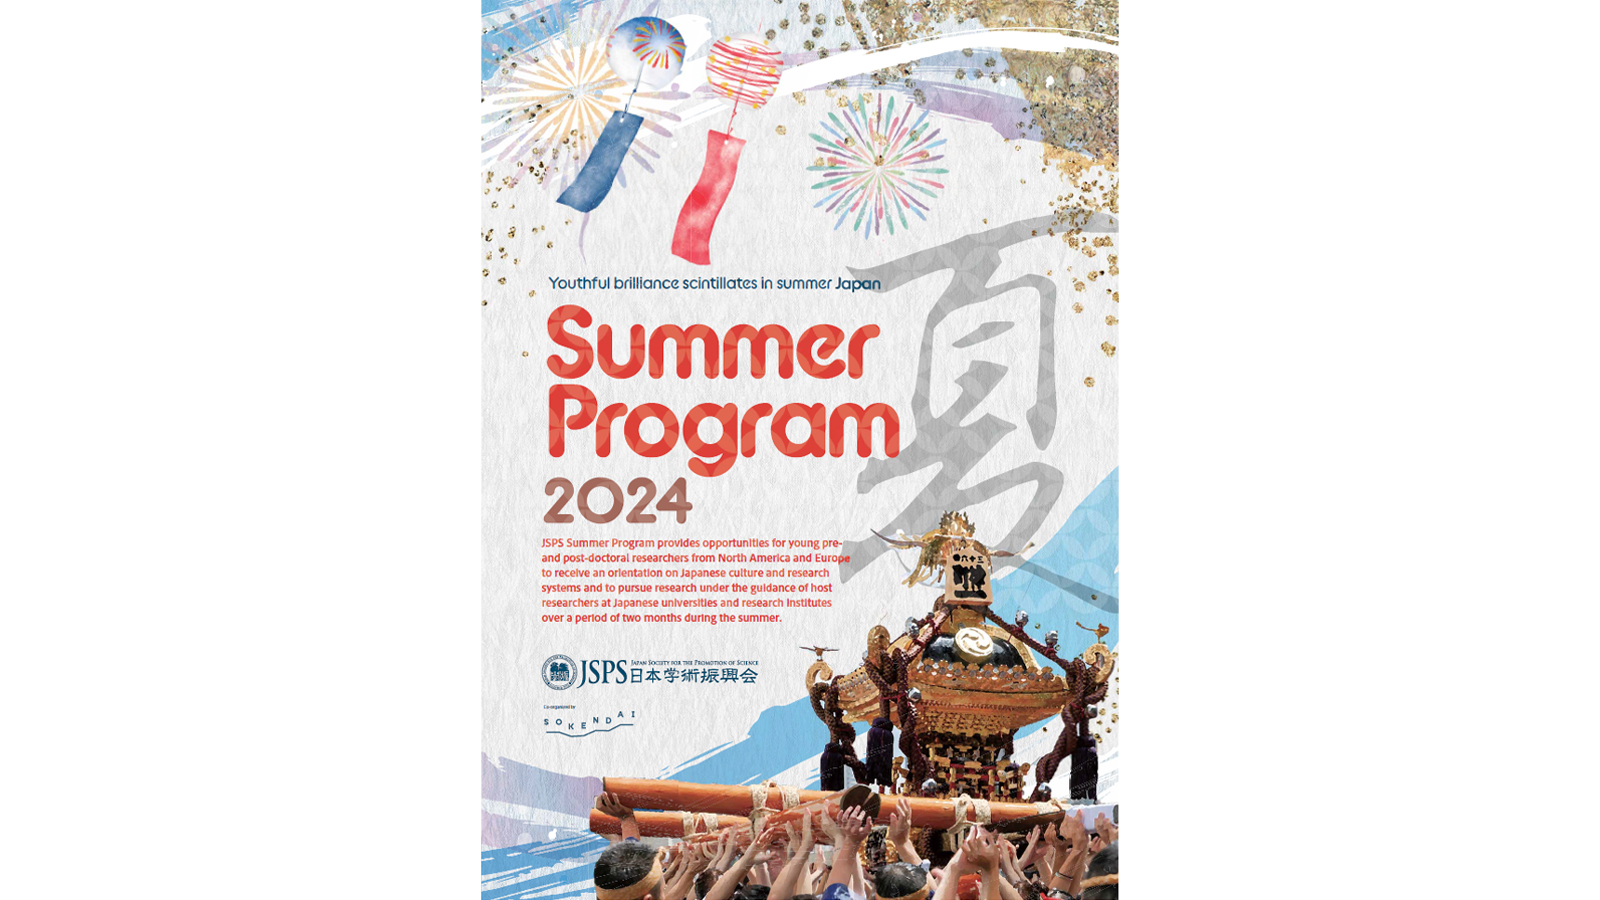 Imgae: Summer Program 2024 Flyer